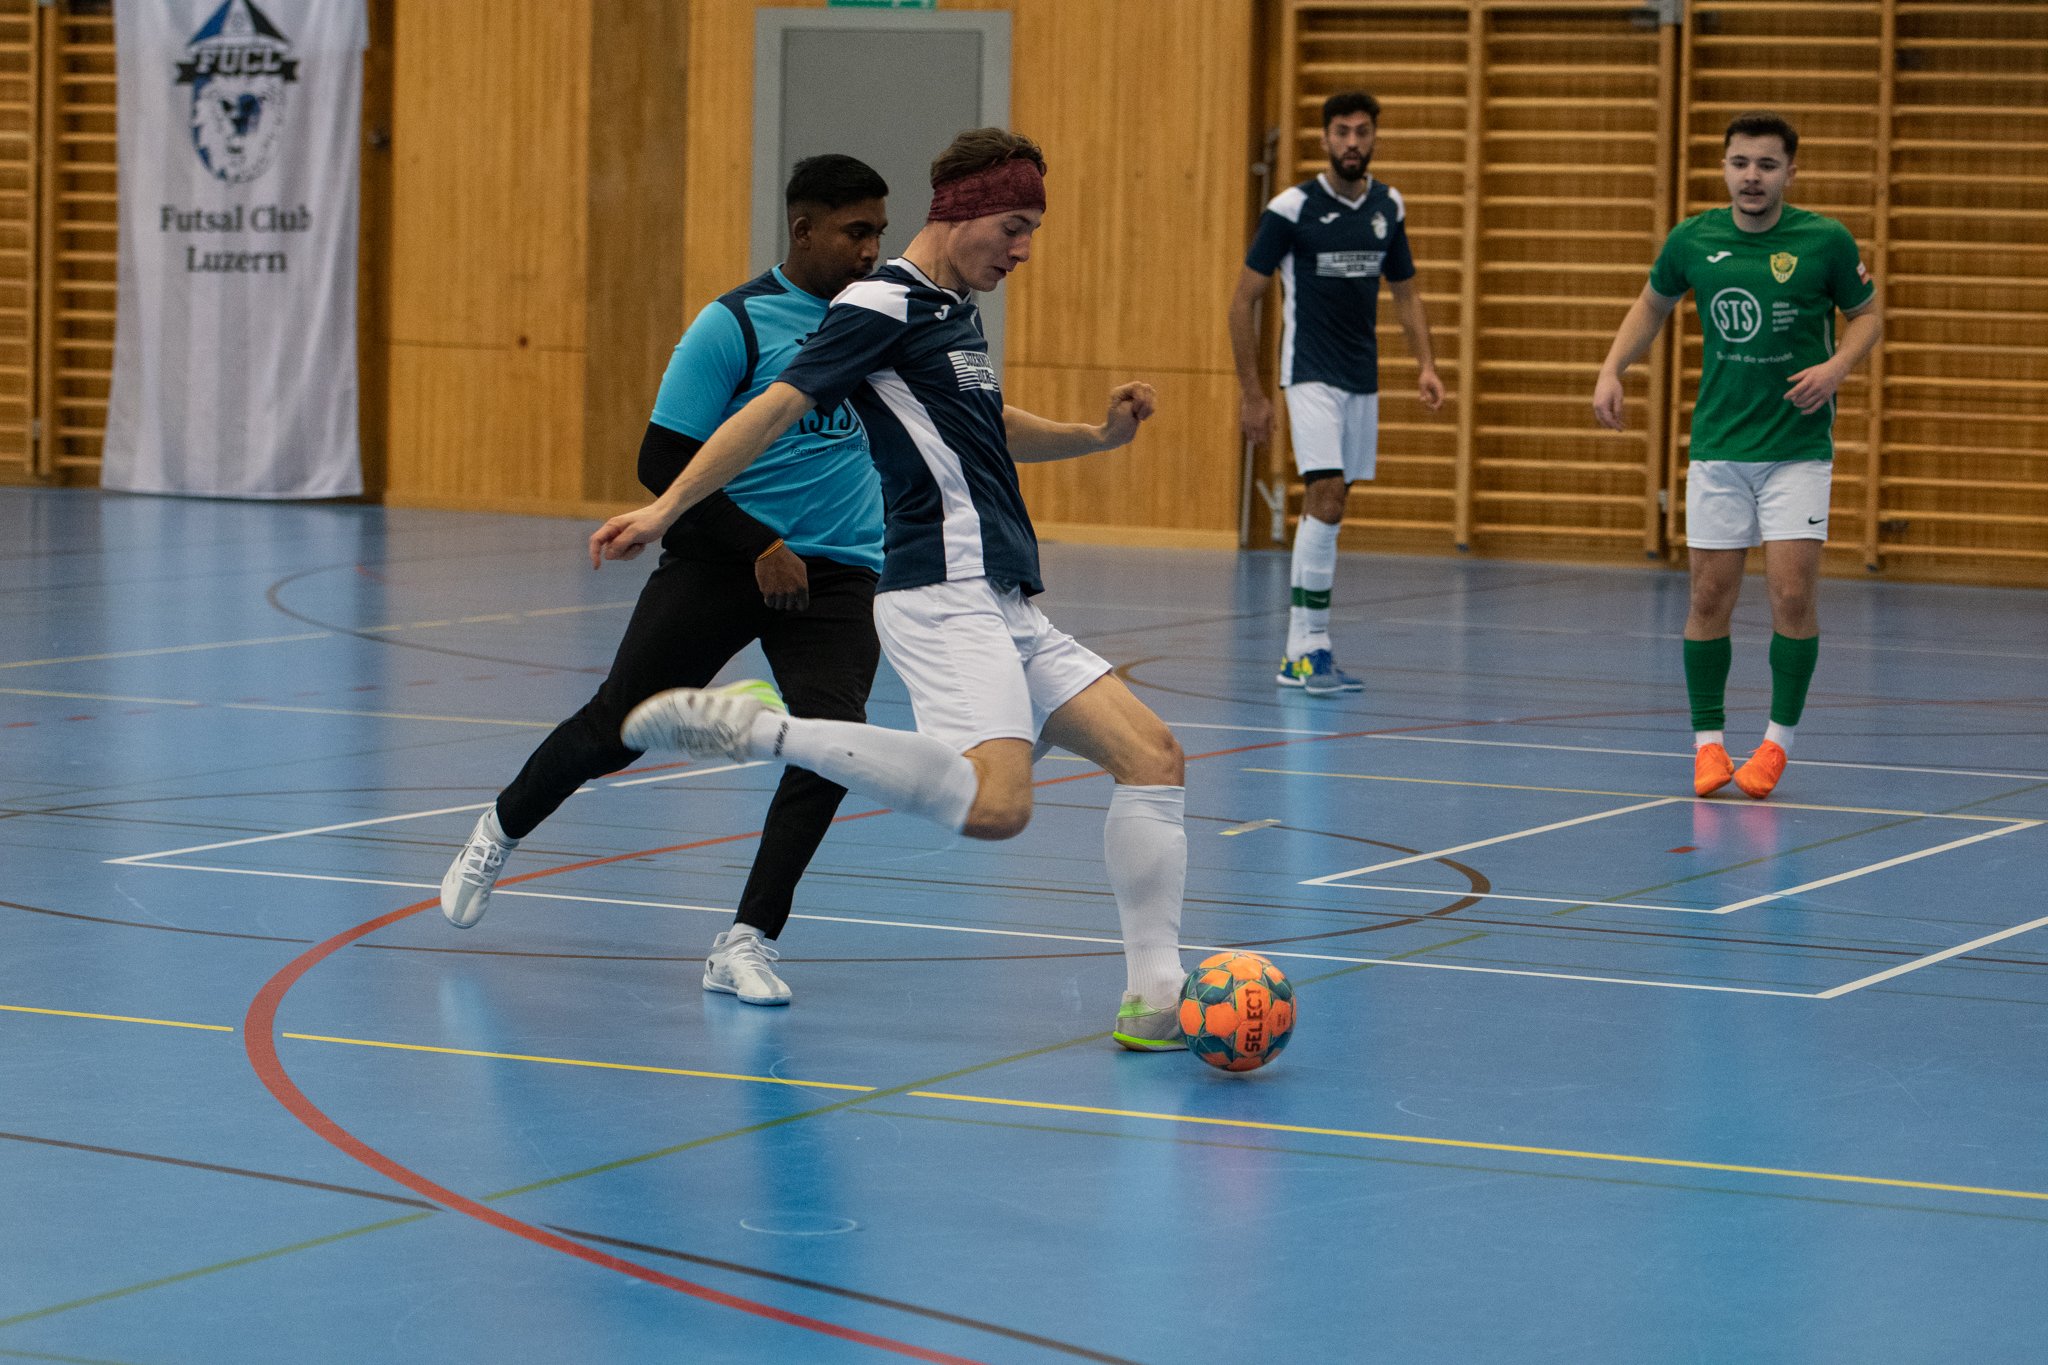 Futsal-Club-Luzern-Kriens-061.jpg